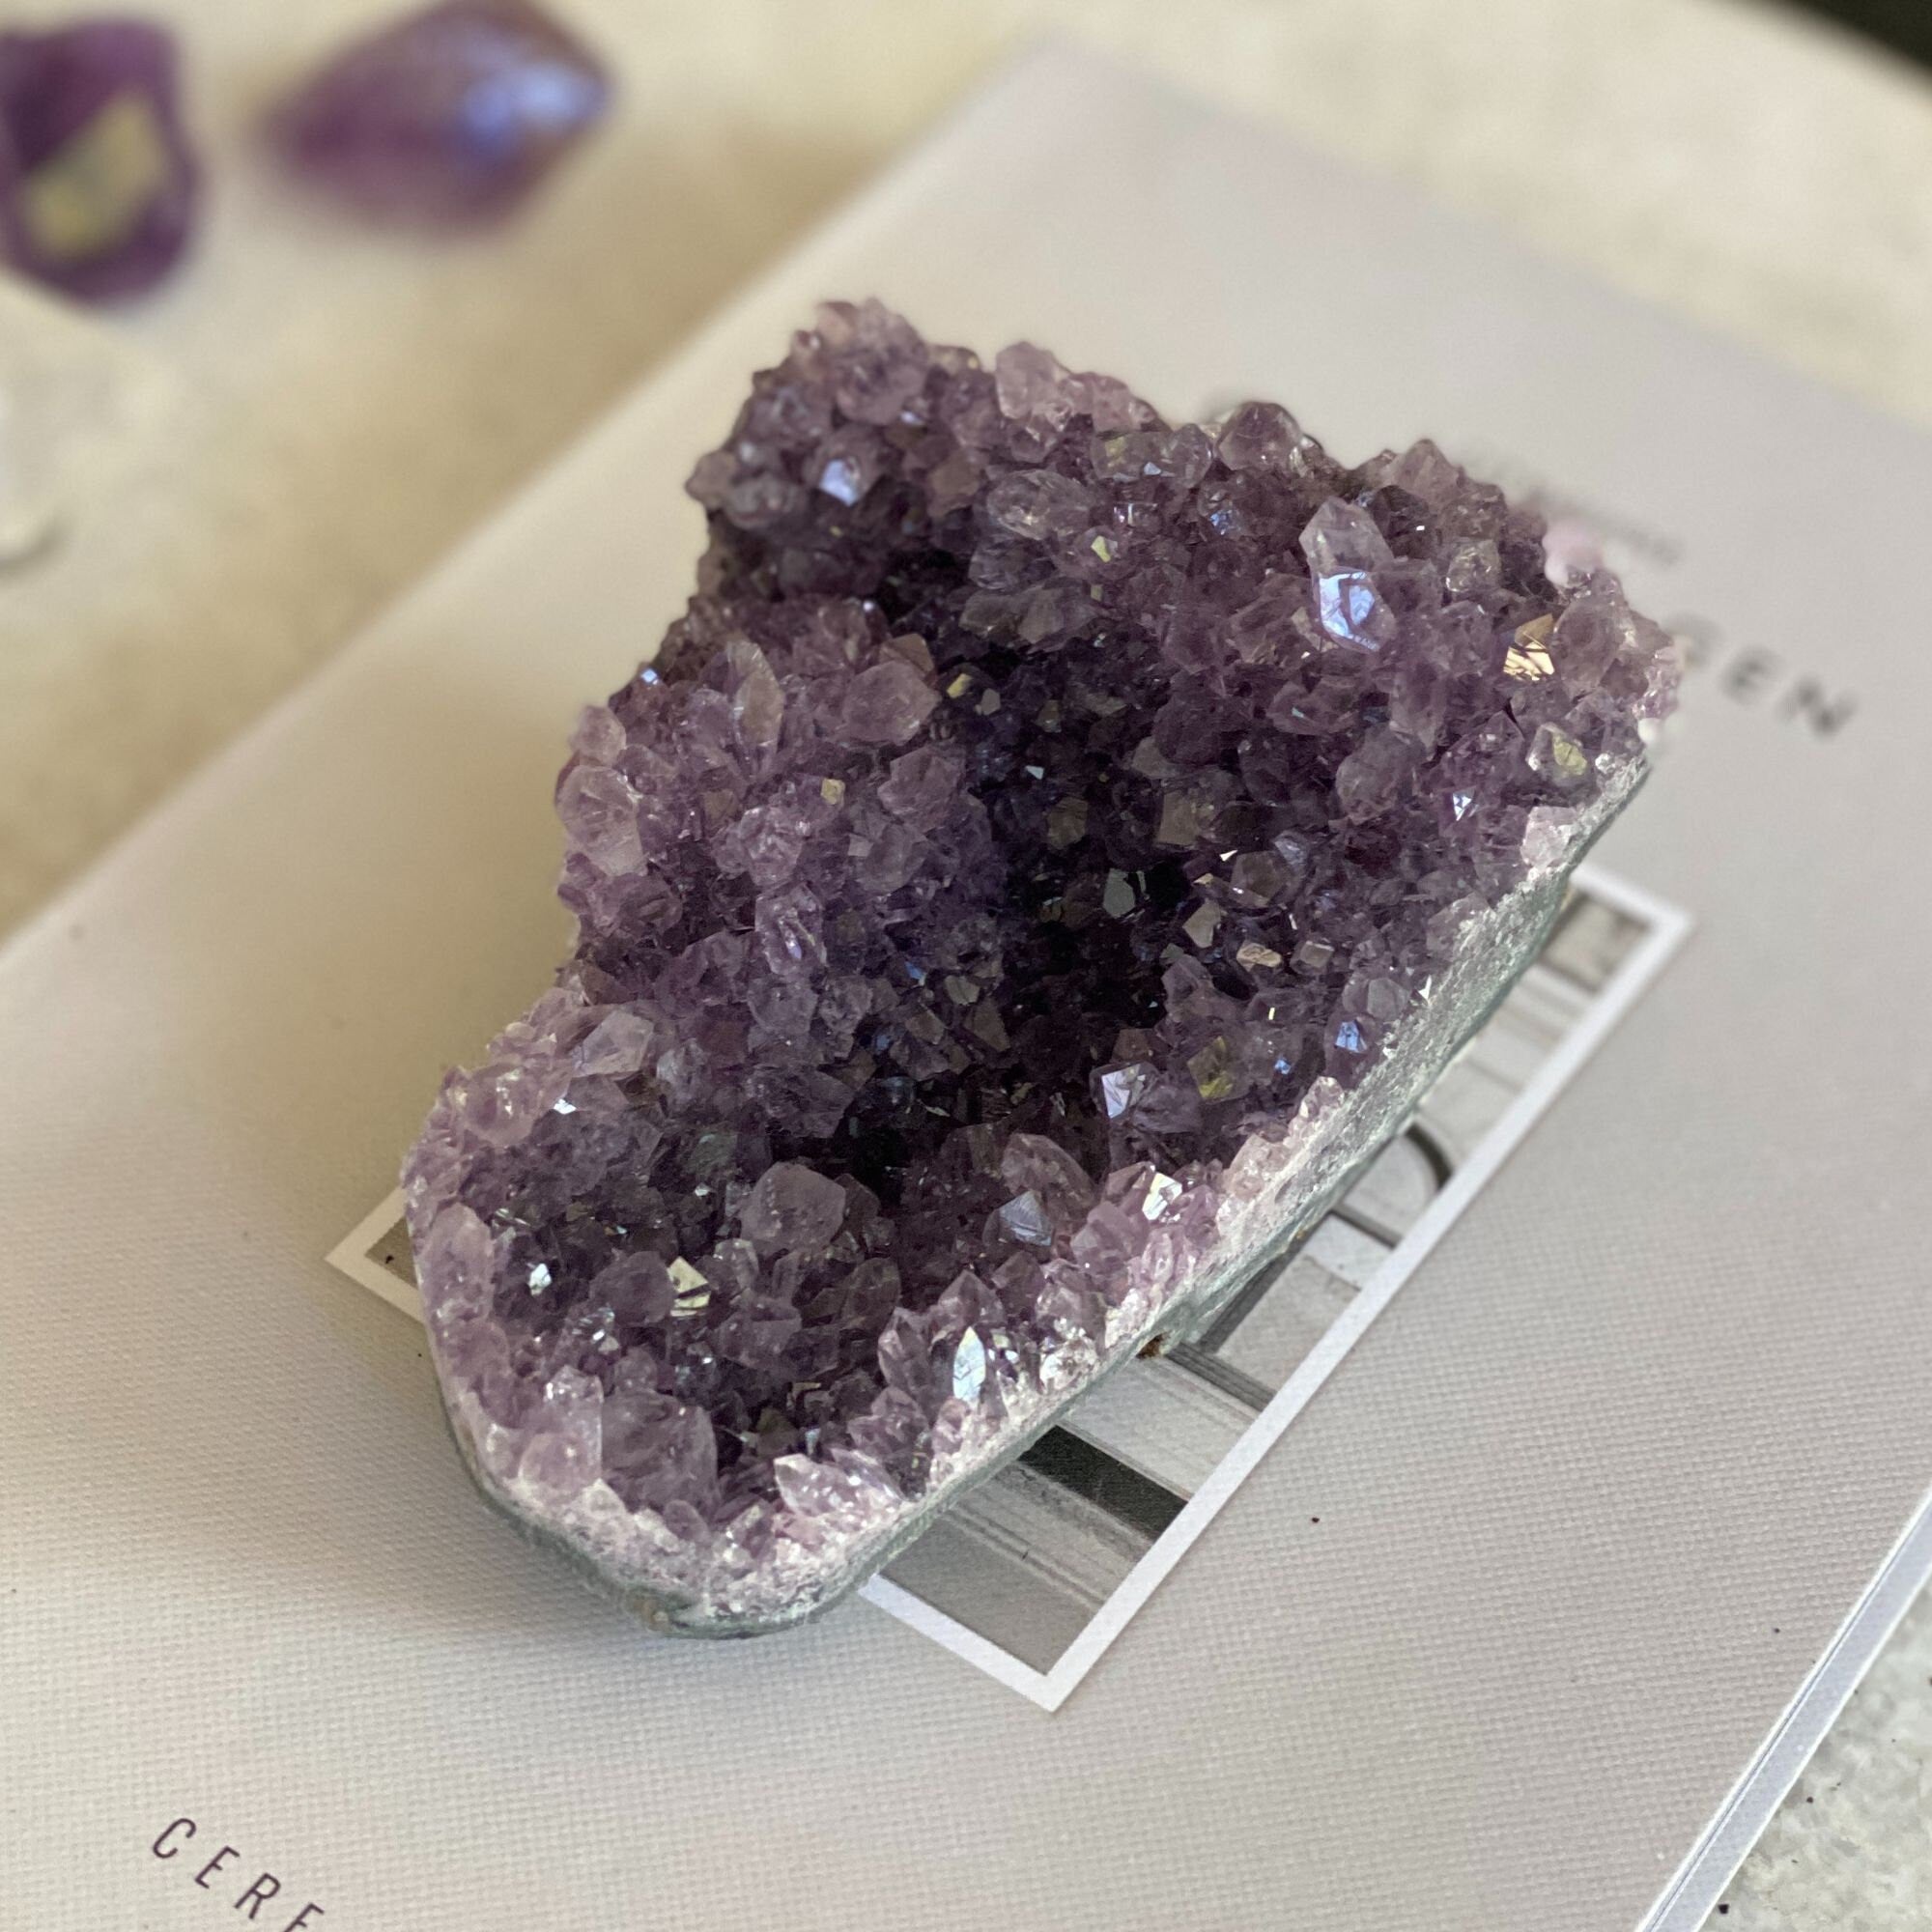 Flat amethyst raw purple crystal cluster